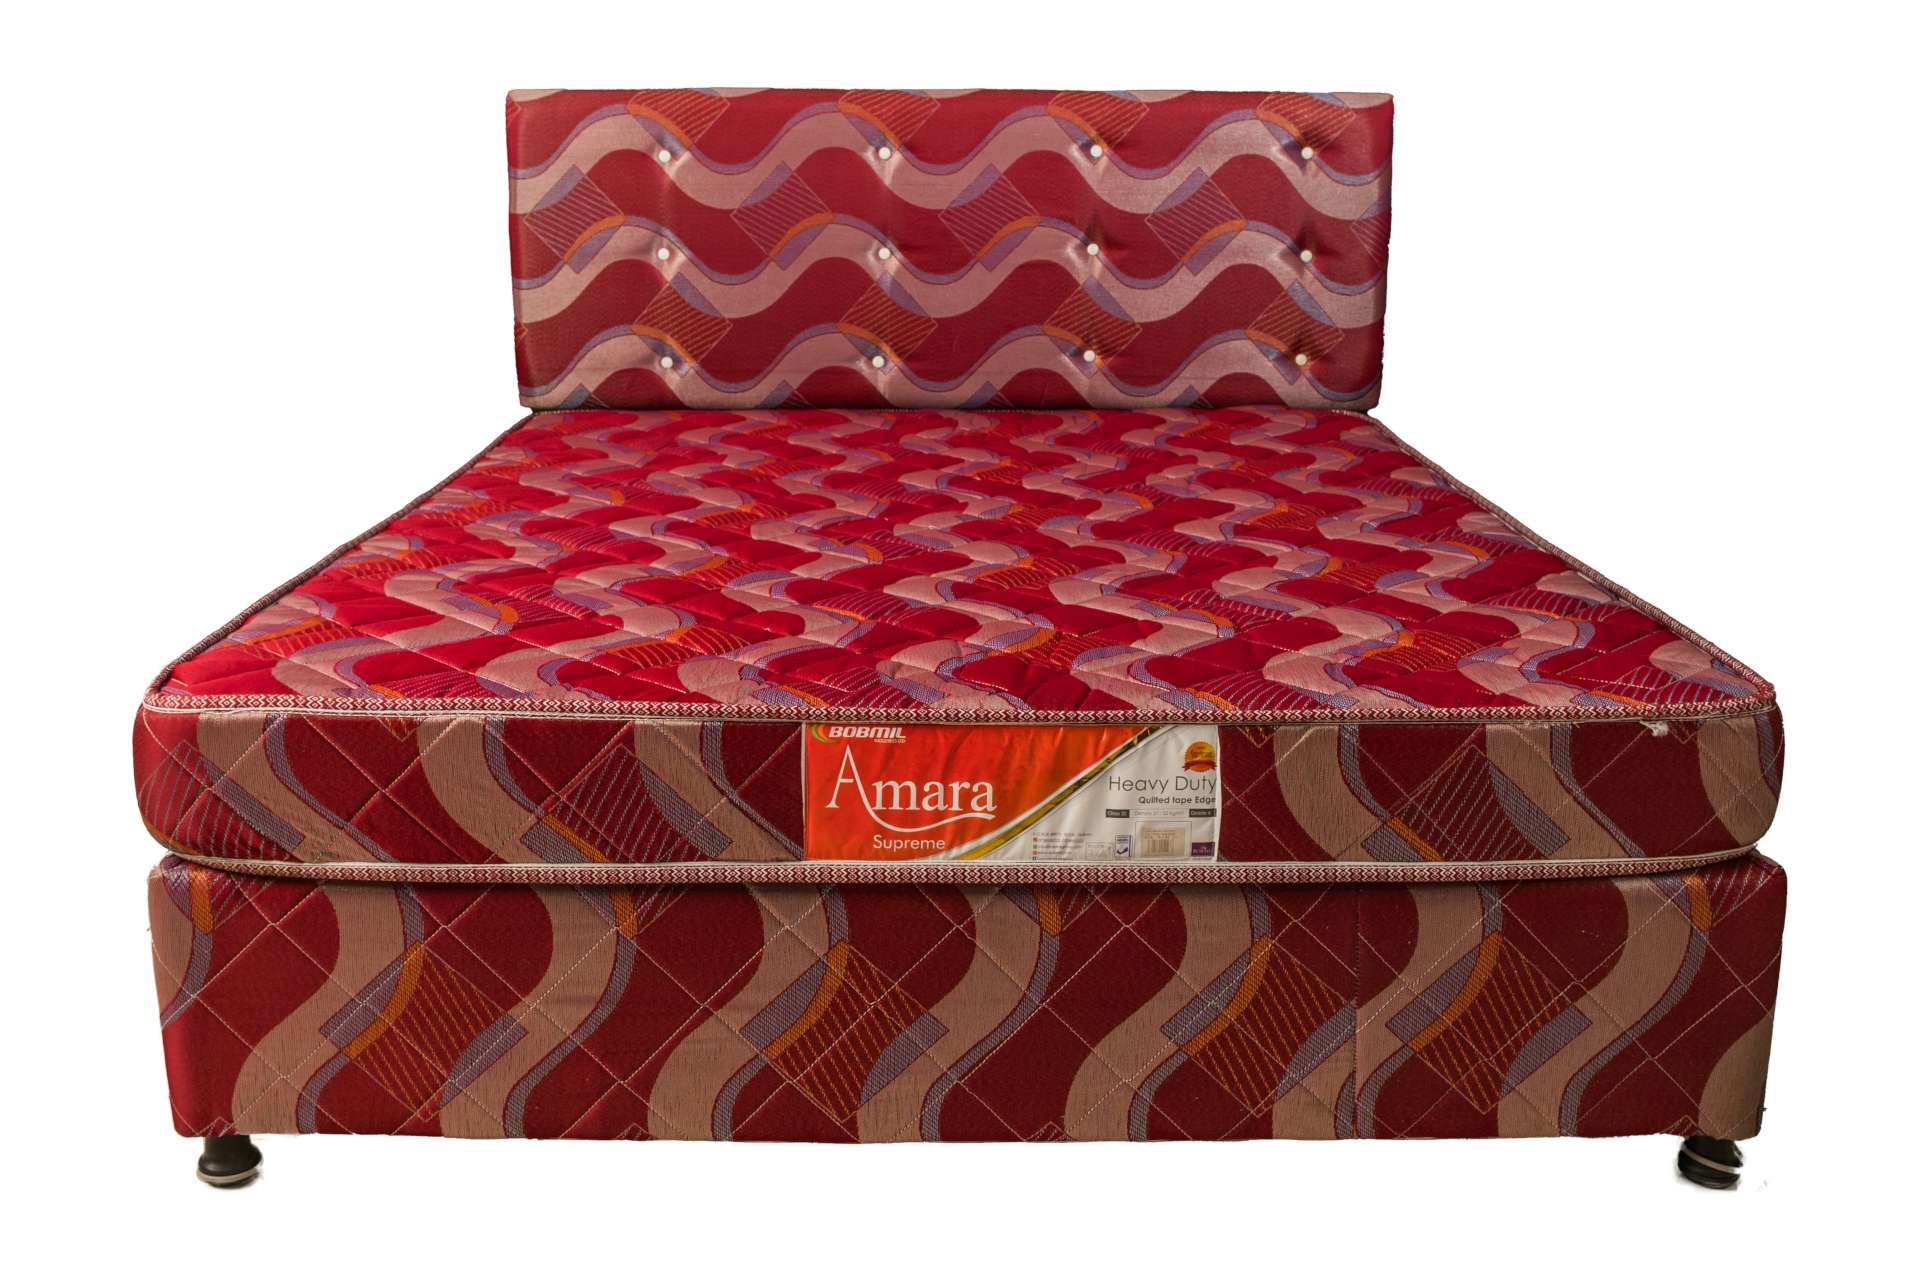 bobmil mattress prices in kenya